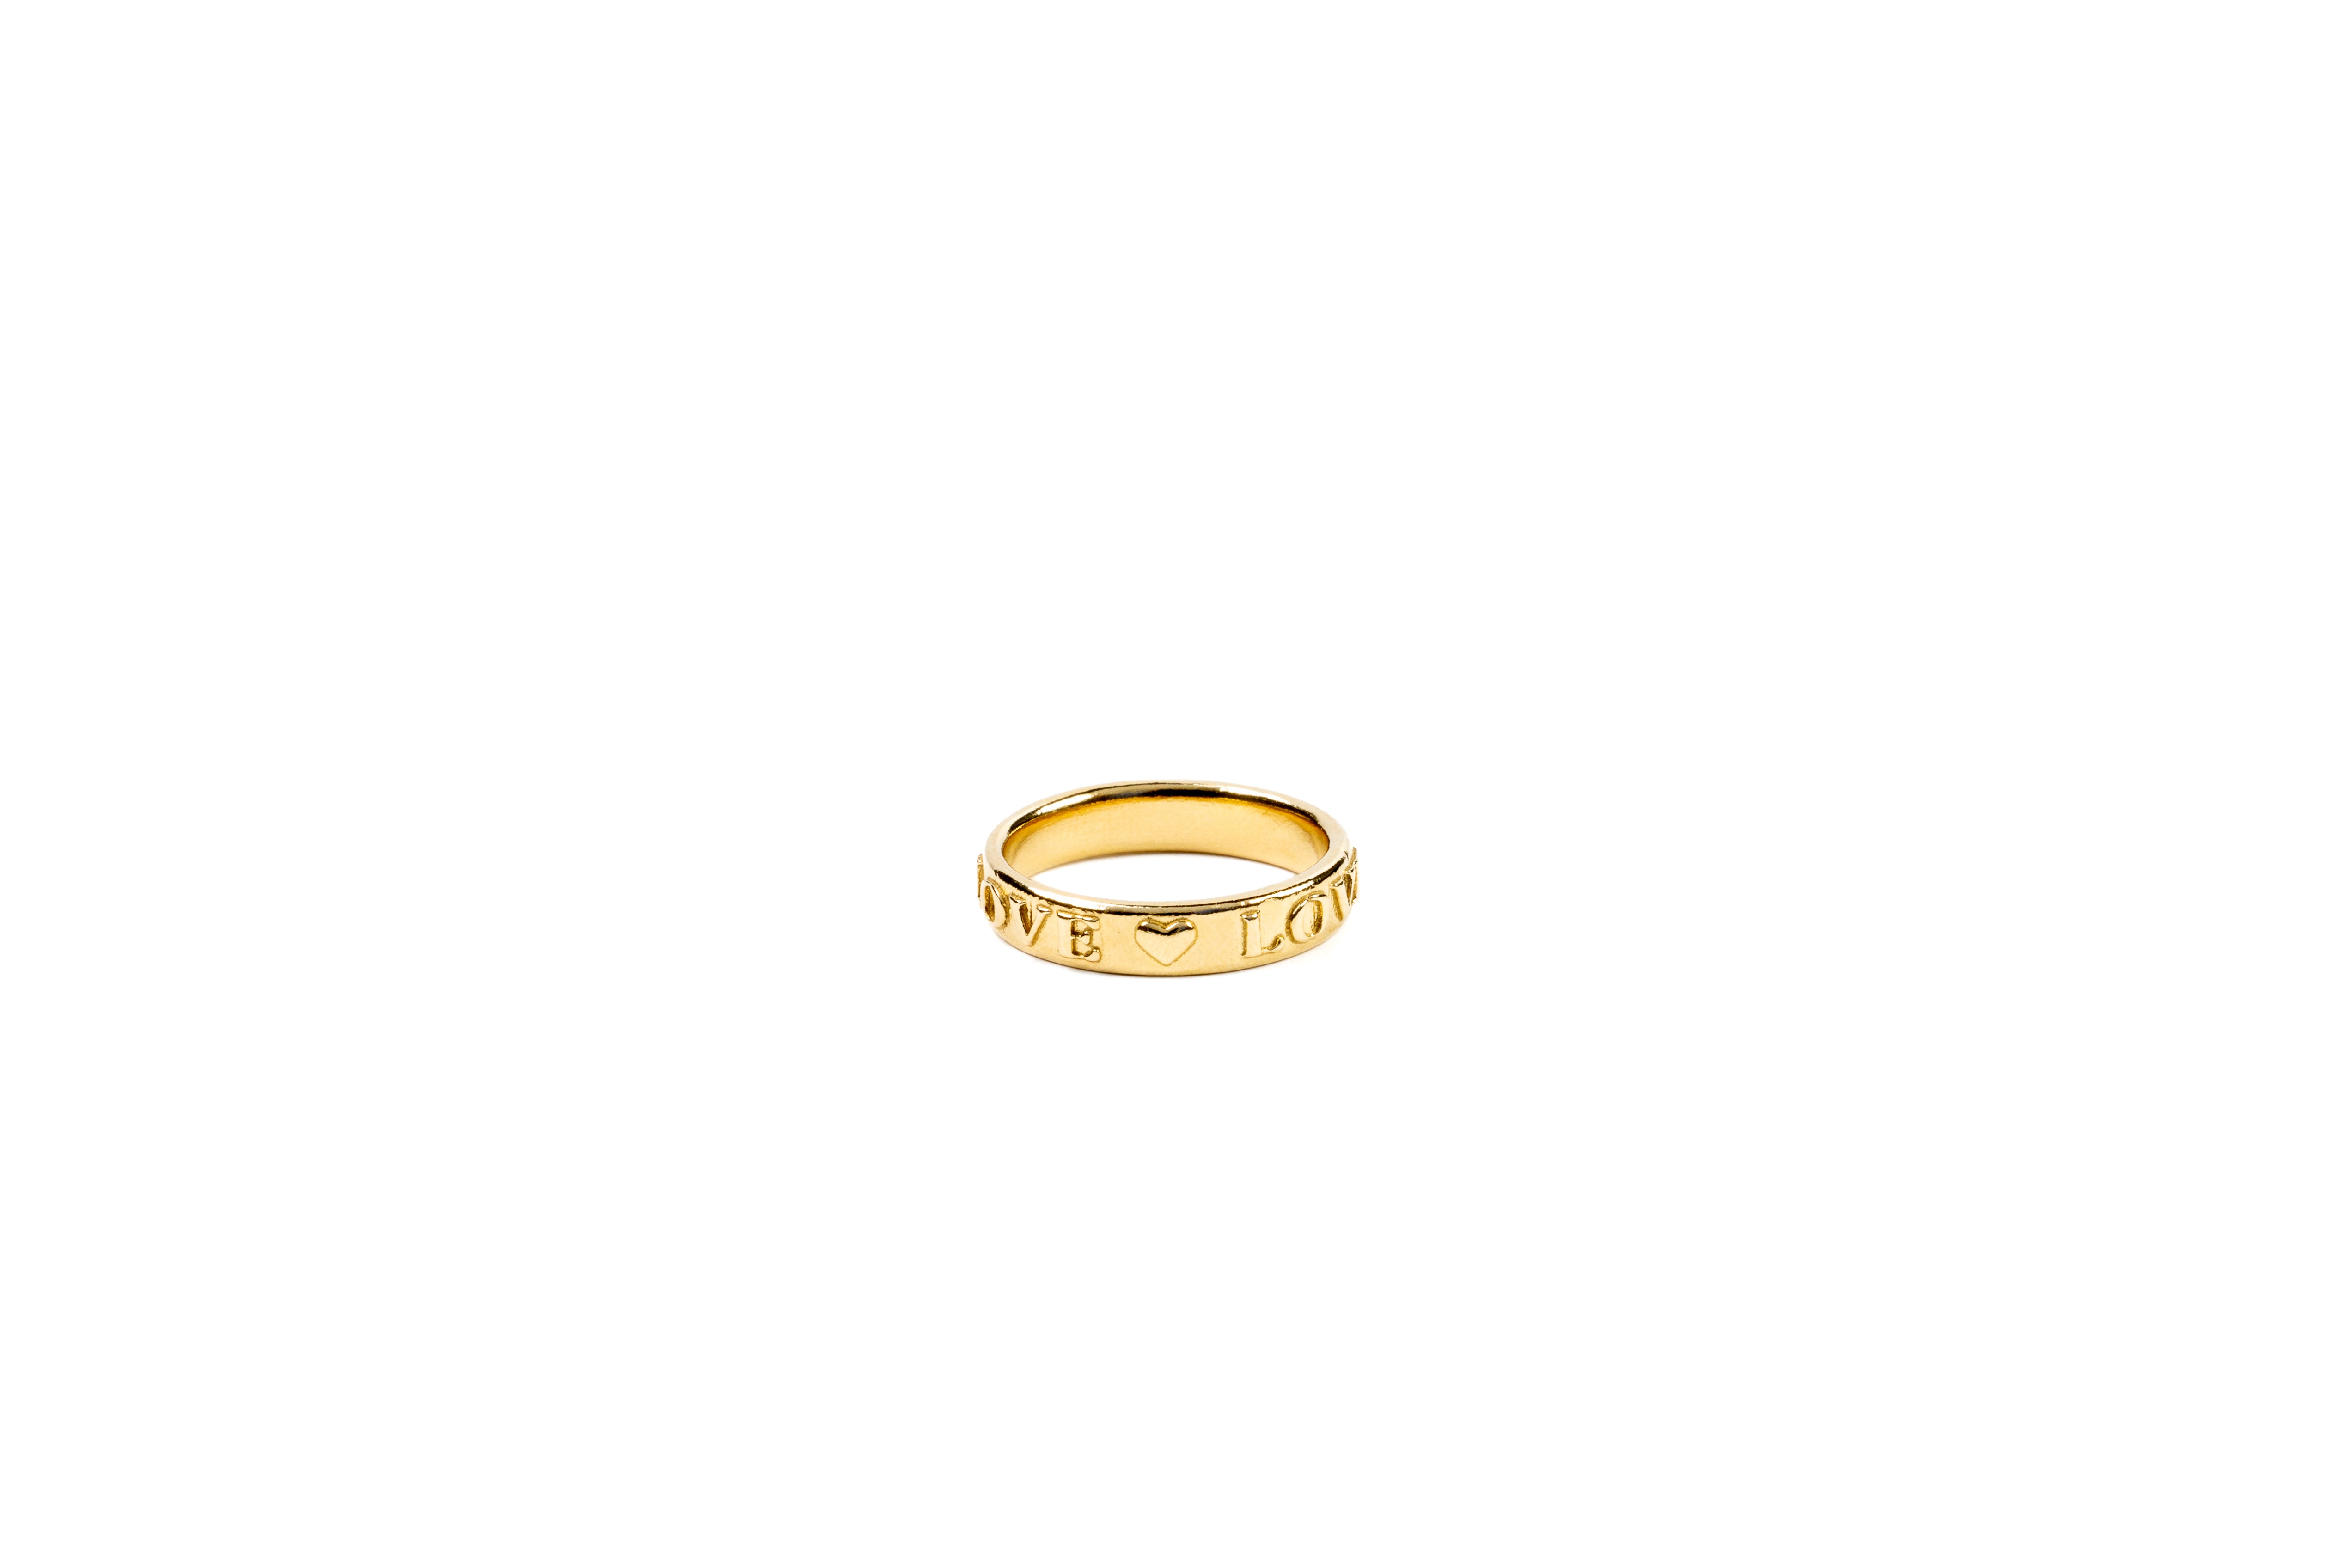 Gold Love Band Ring - Iris 1956